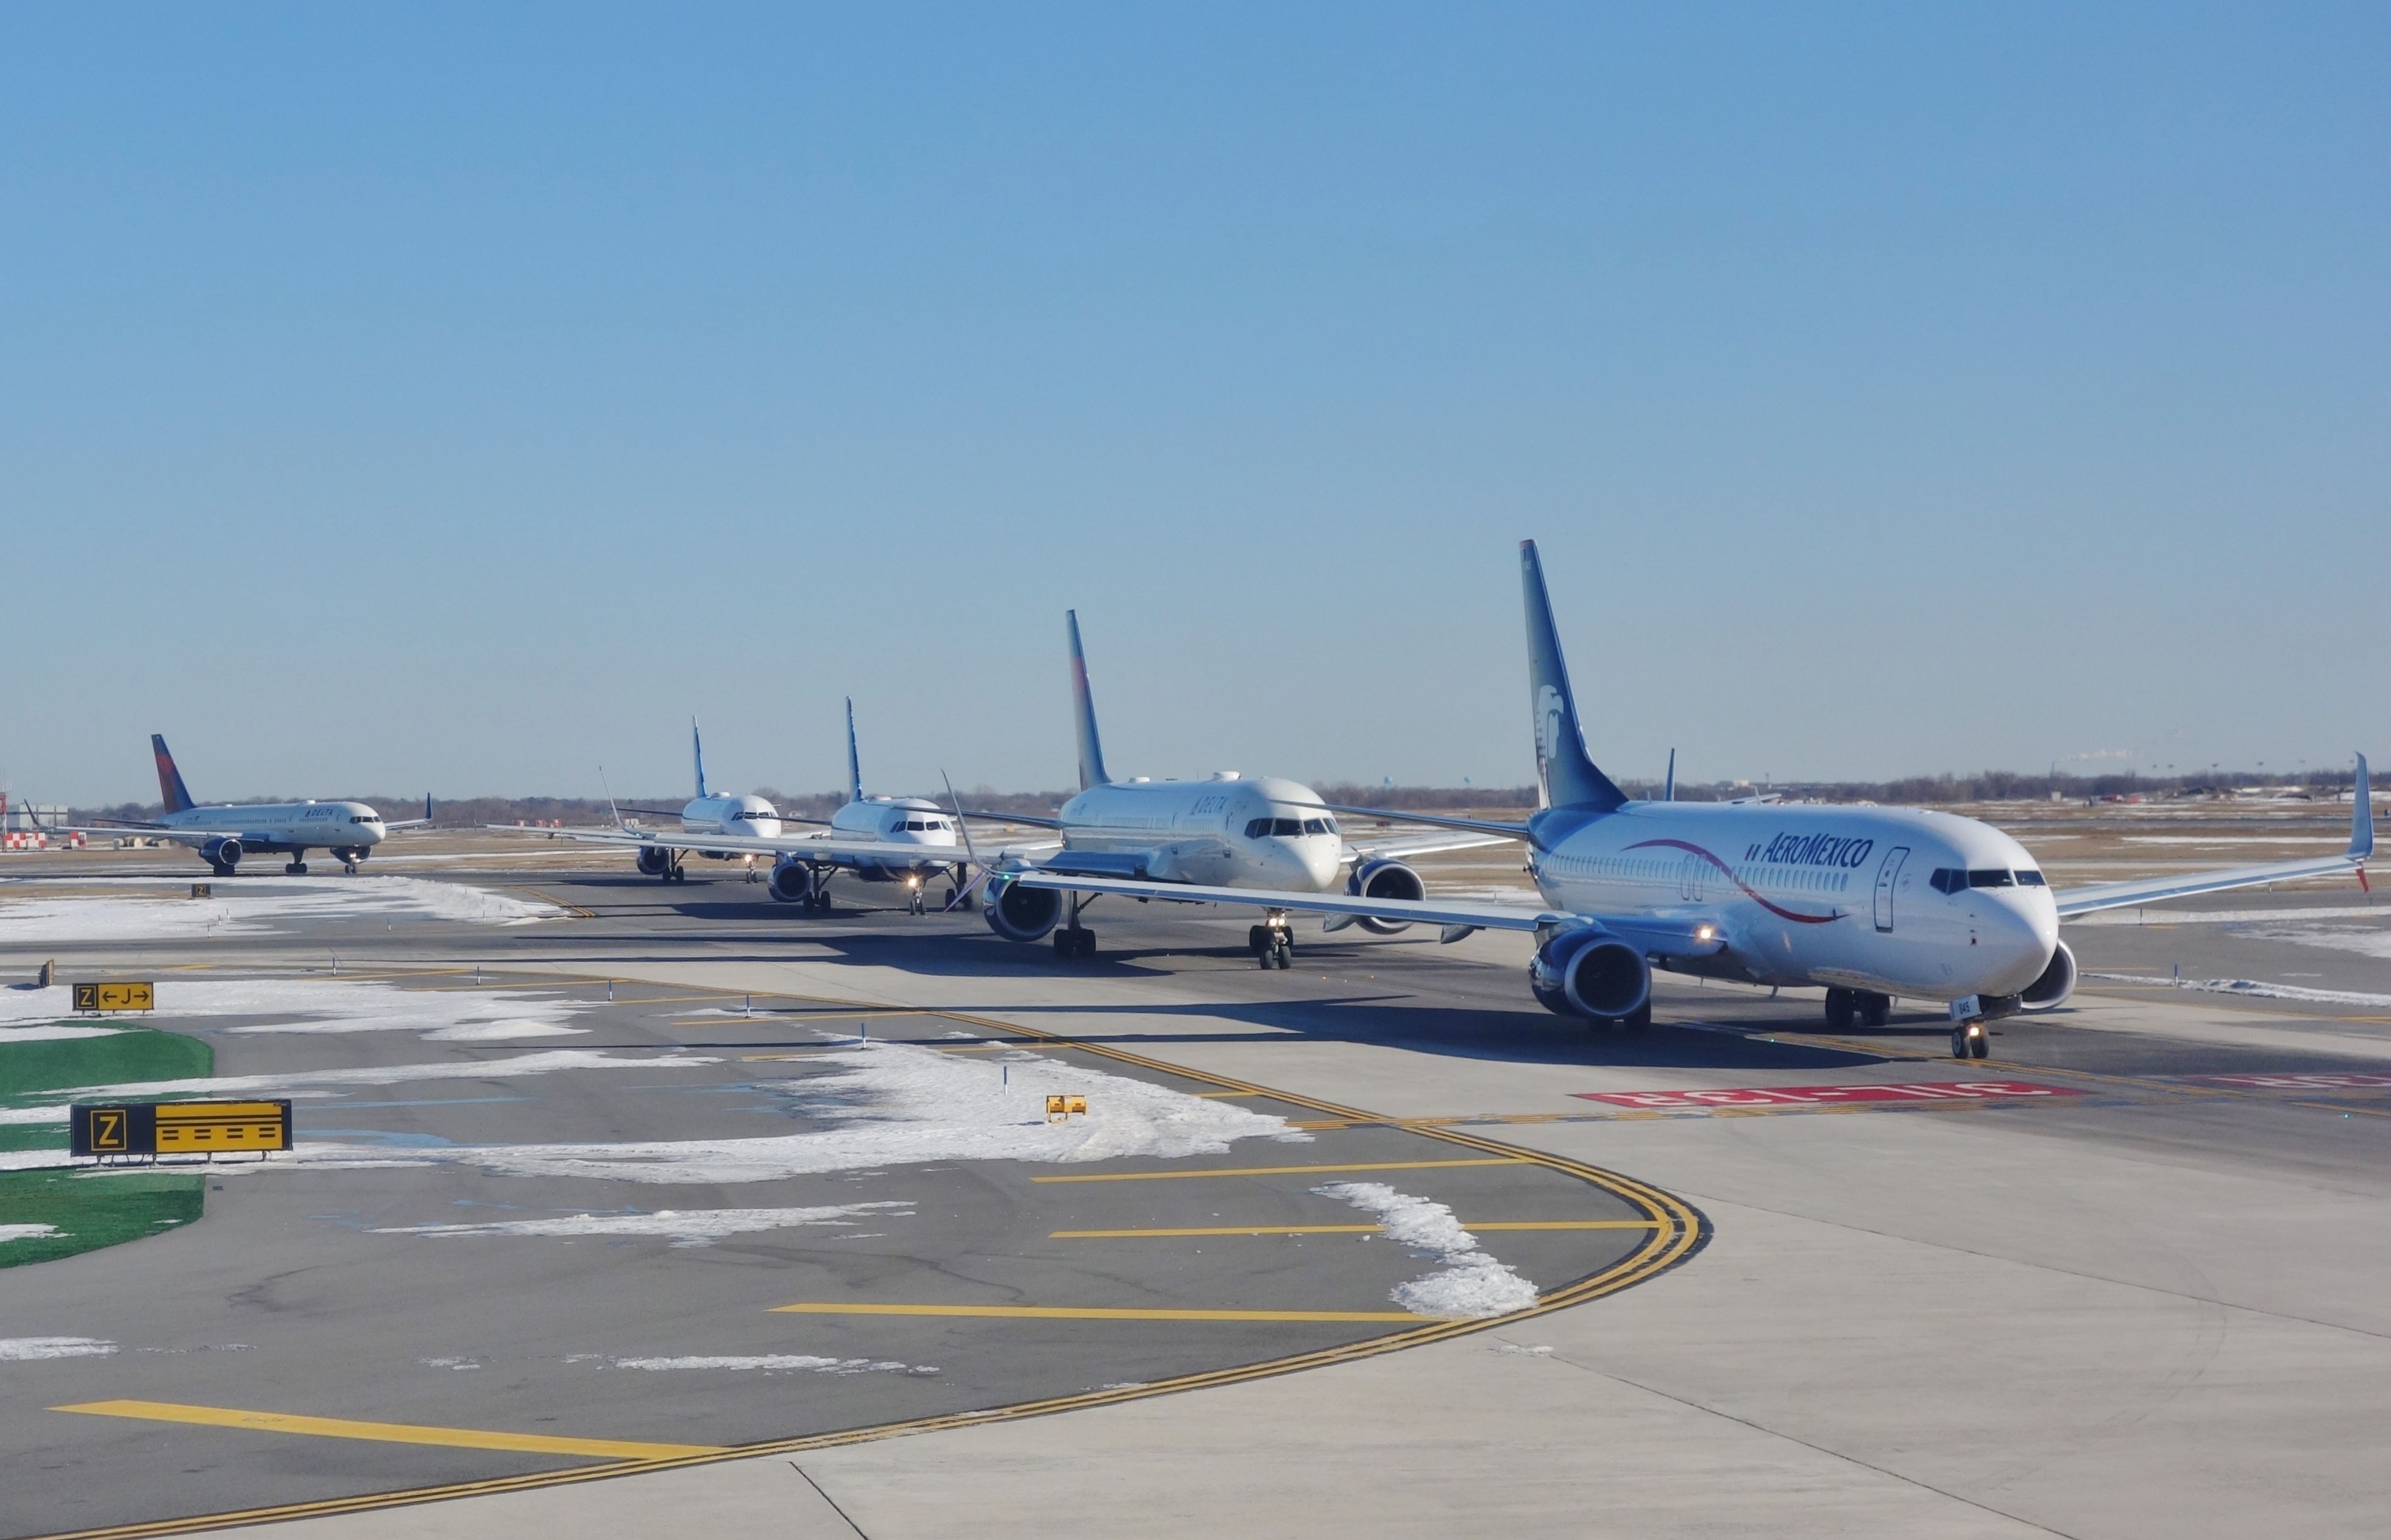 Aircraft Queue at New York JFK airport.